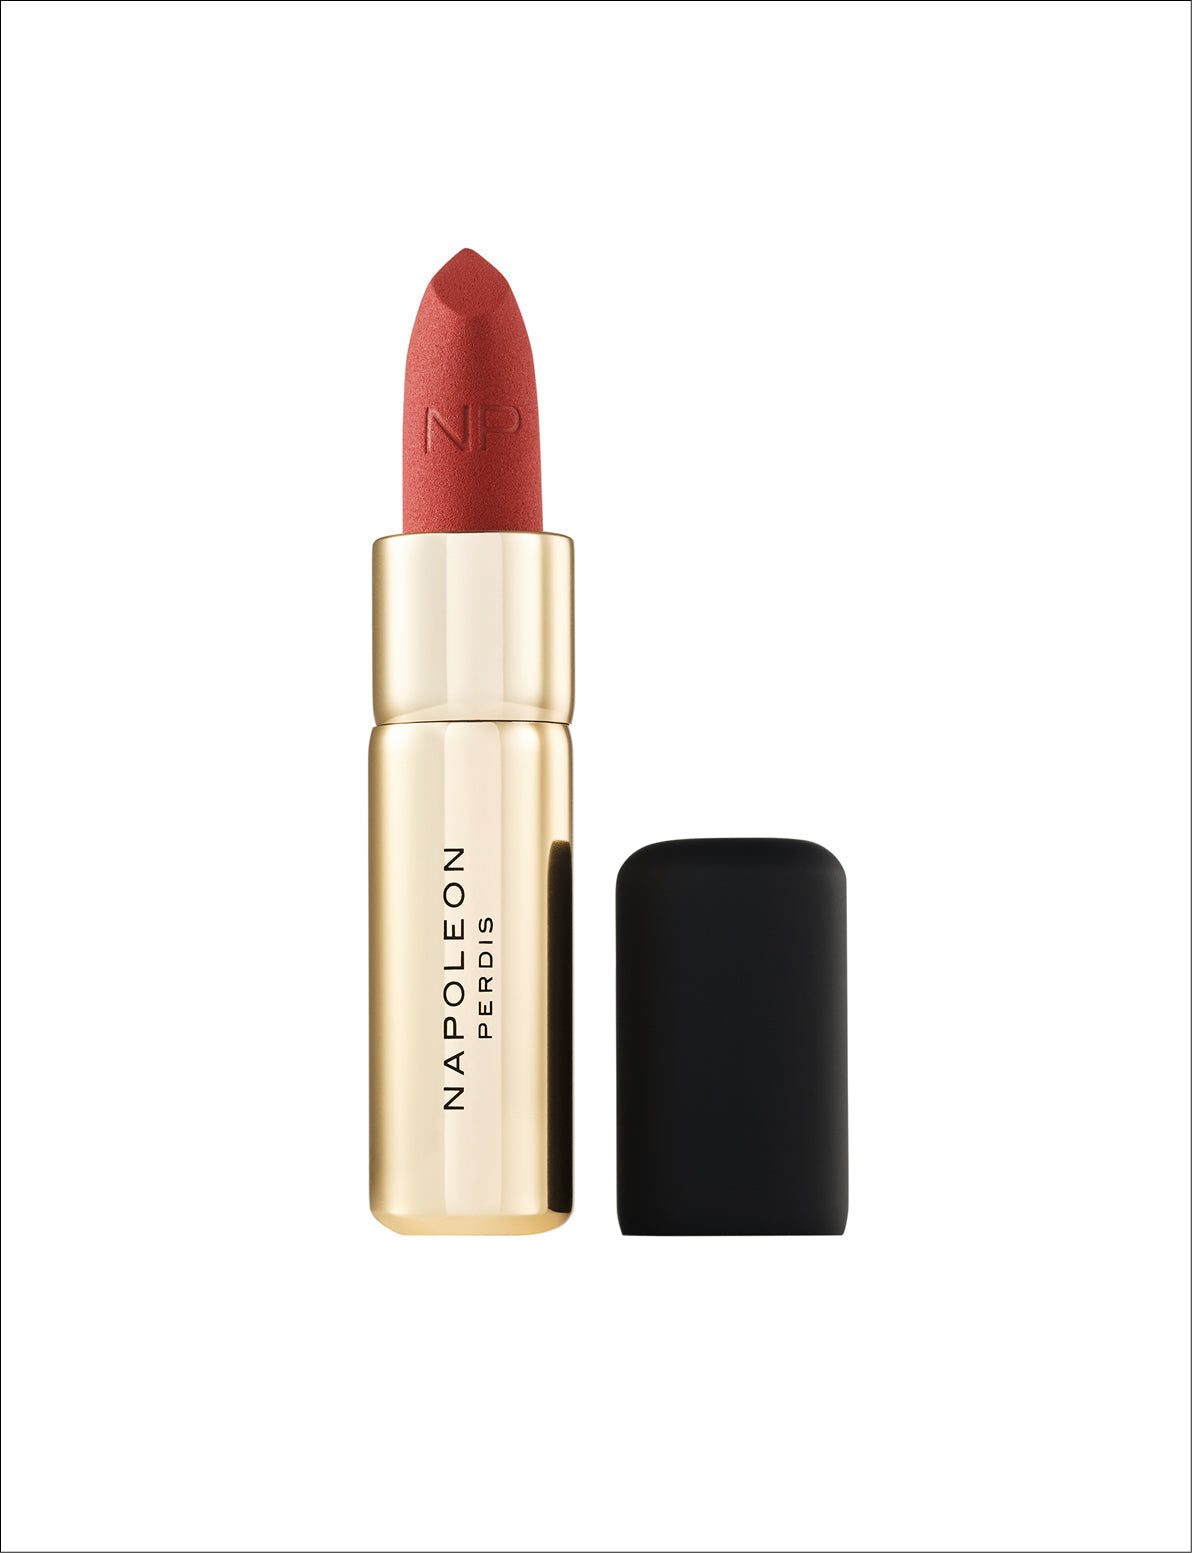 Napoleon Perdis Soul-Matte Longwear Lipstick 3g Color106 Respected